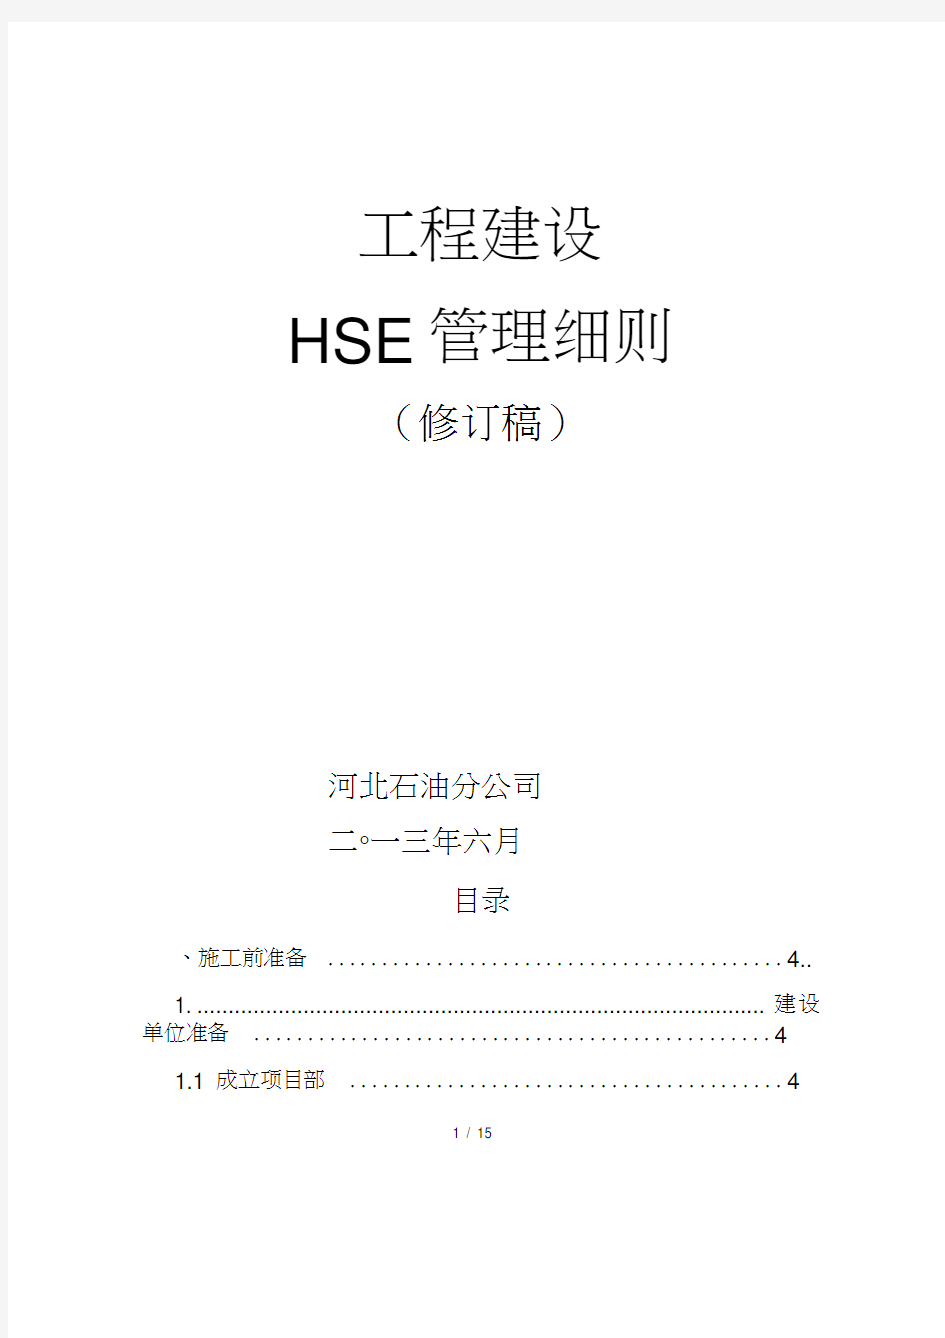 中石化工程建设HSE管理细则